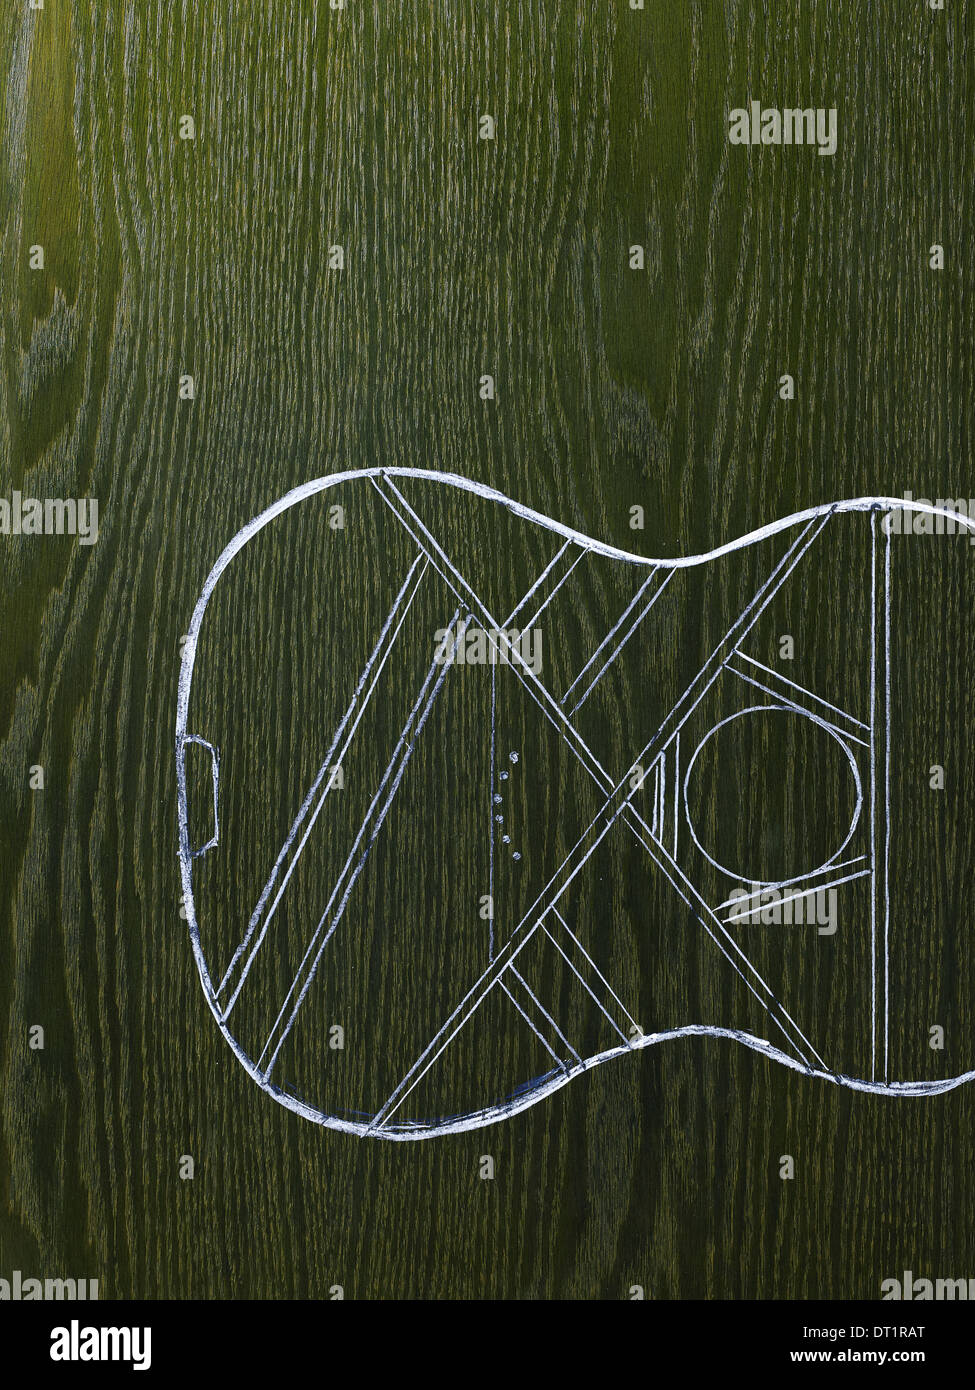 Eine Strichzeichnung Bild auf natürliche Holzmaserung Hintergrund der Resonanzboden und Körper eines Musikinstruments Gitarre Stockfoto